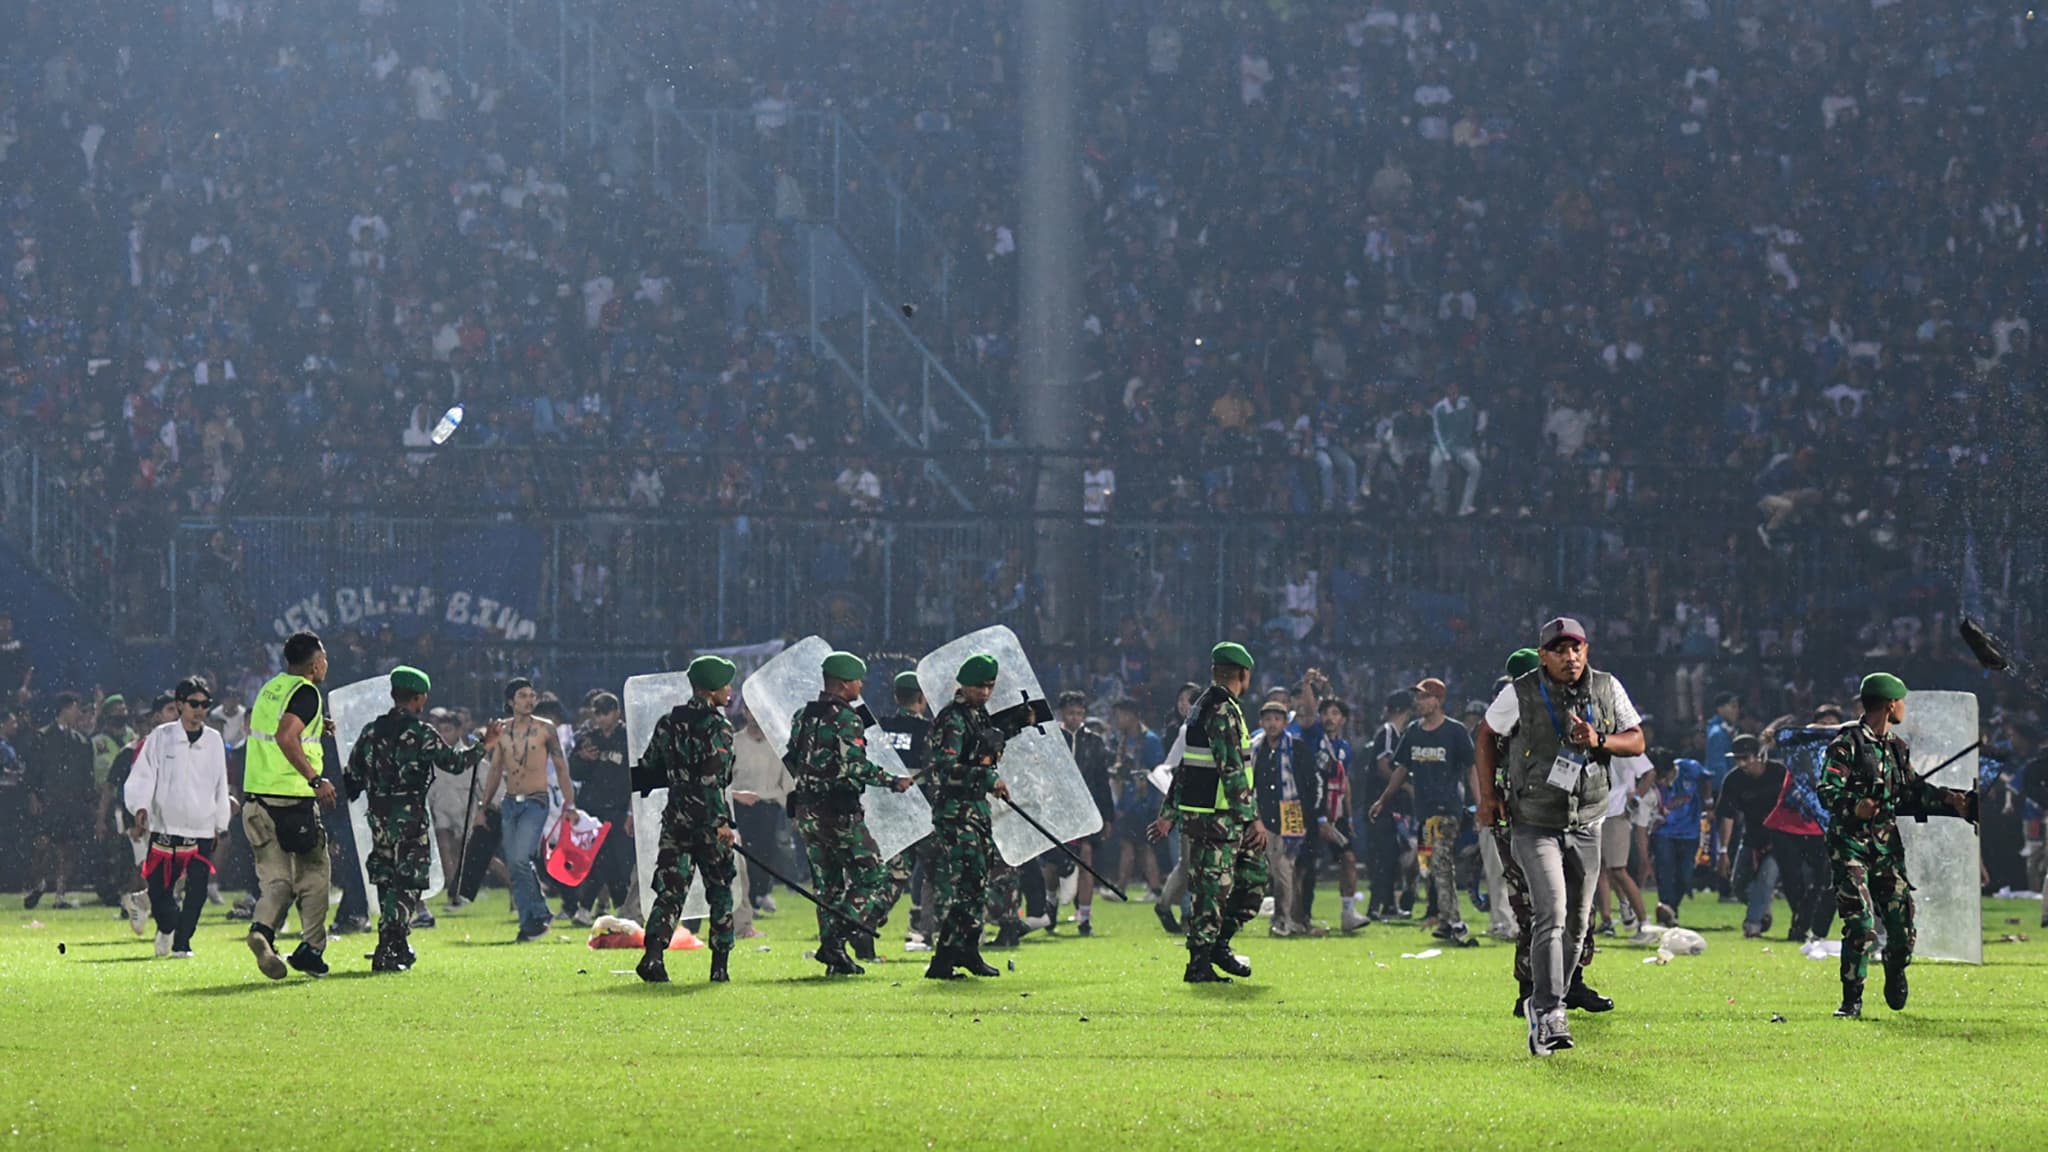 Na żywo – dramat na boisku piłkarskim w Indonezji: „Tragedia, której nie można sobie wyobrazić”, odpowiada Infantino